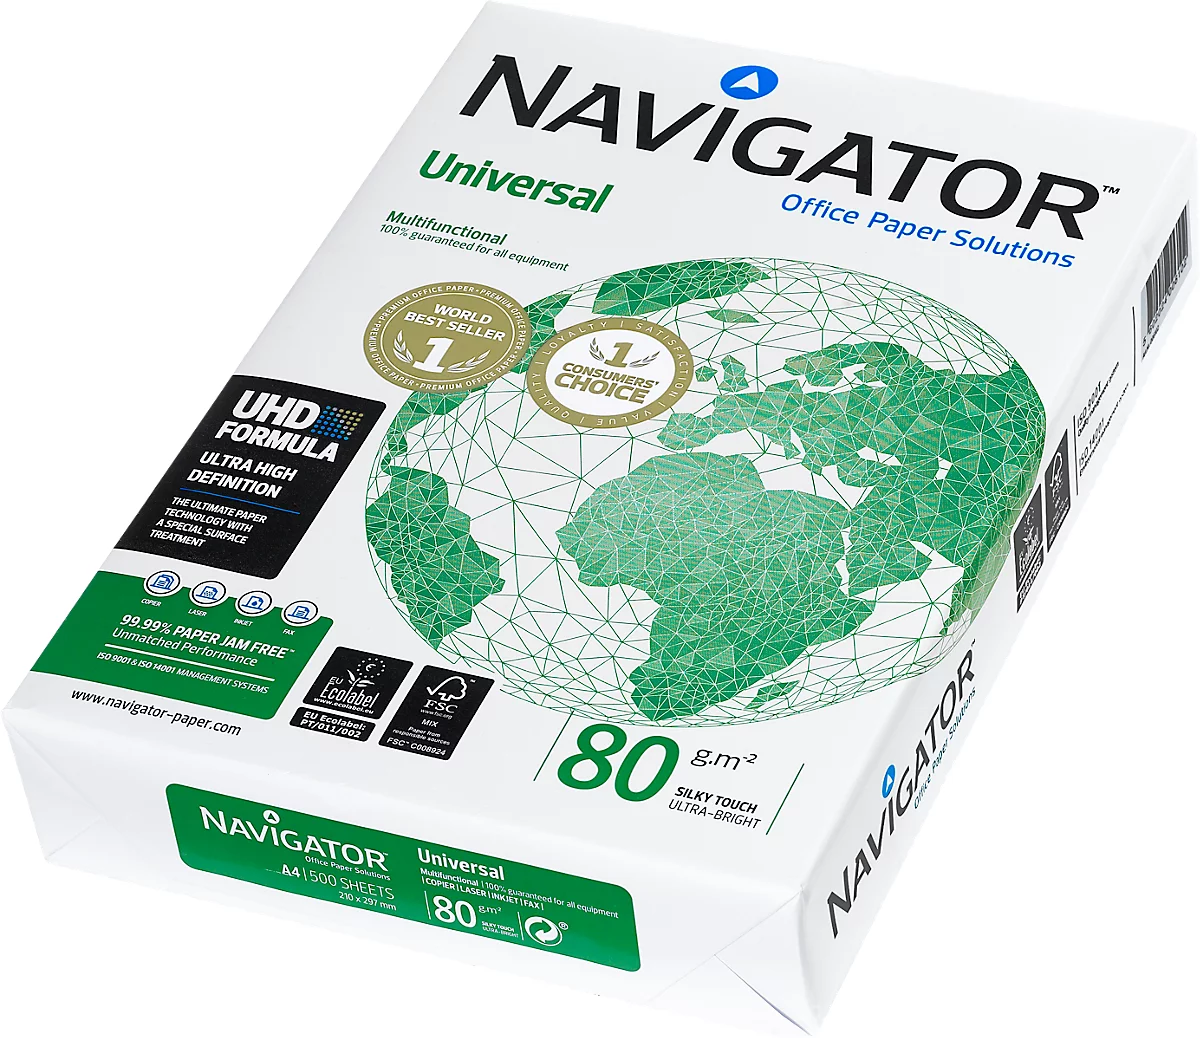 Kopierpapier Navigator Universal, DIN A4, 80 g/m², hochweiss, 1 Karton = 5 x 500 Blatt